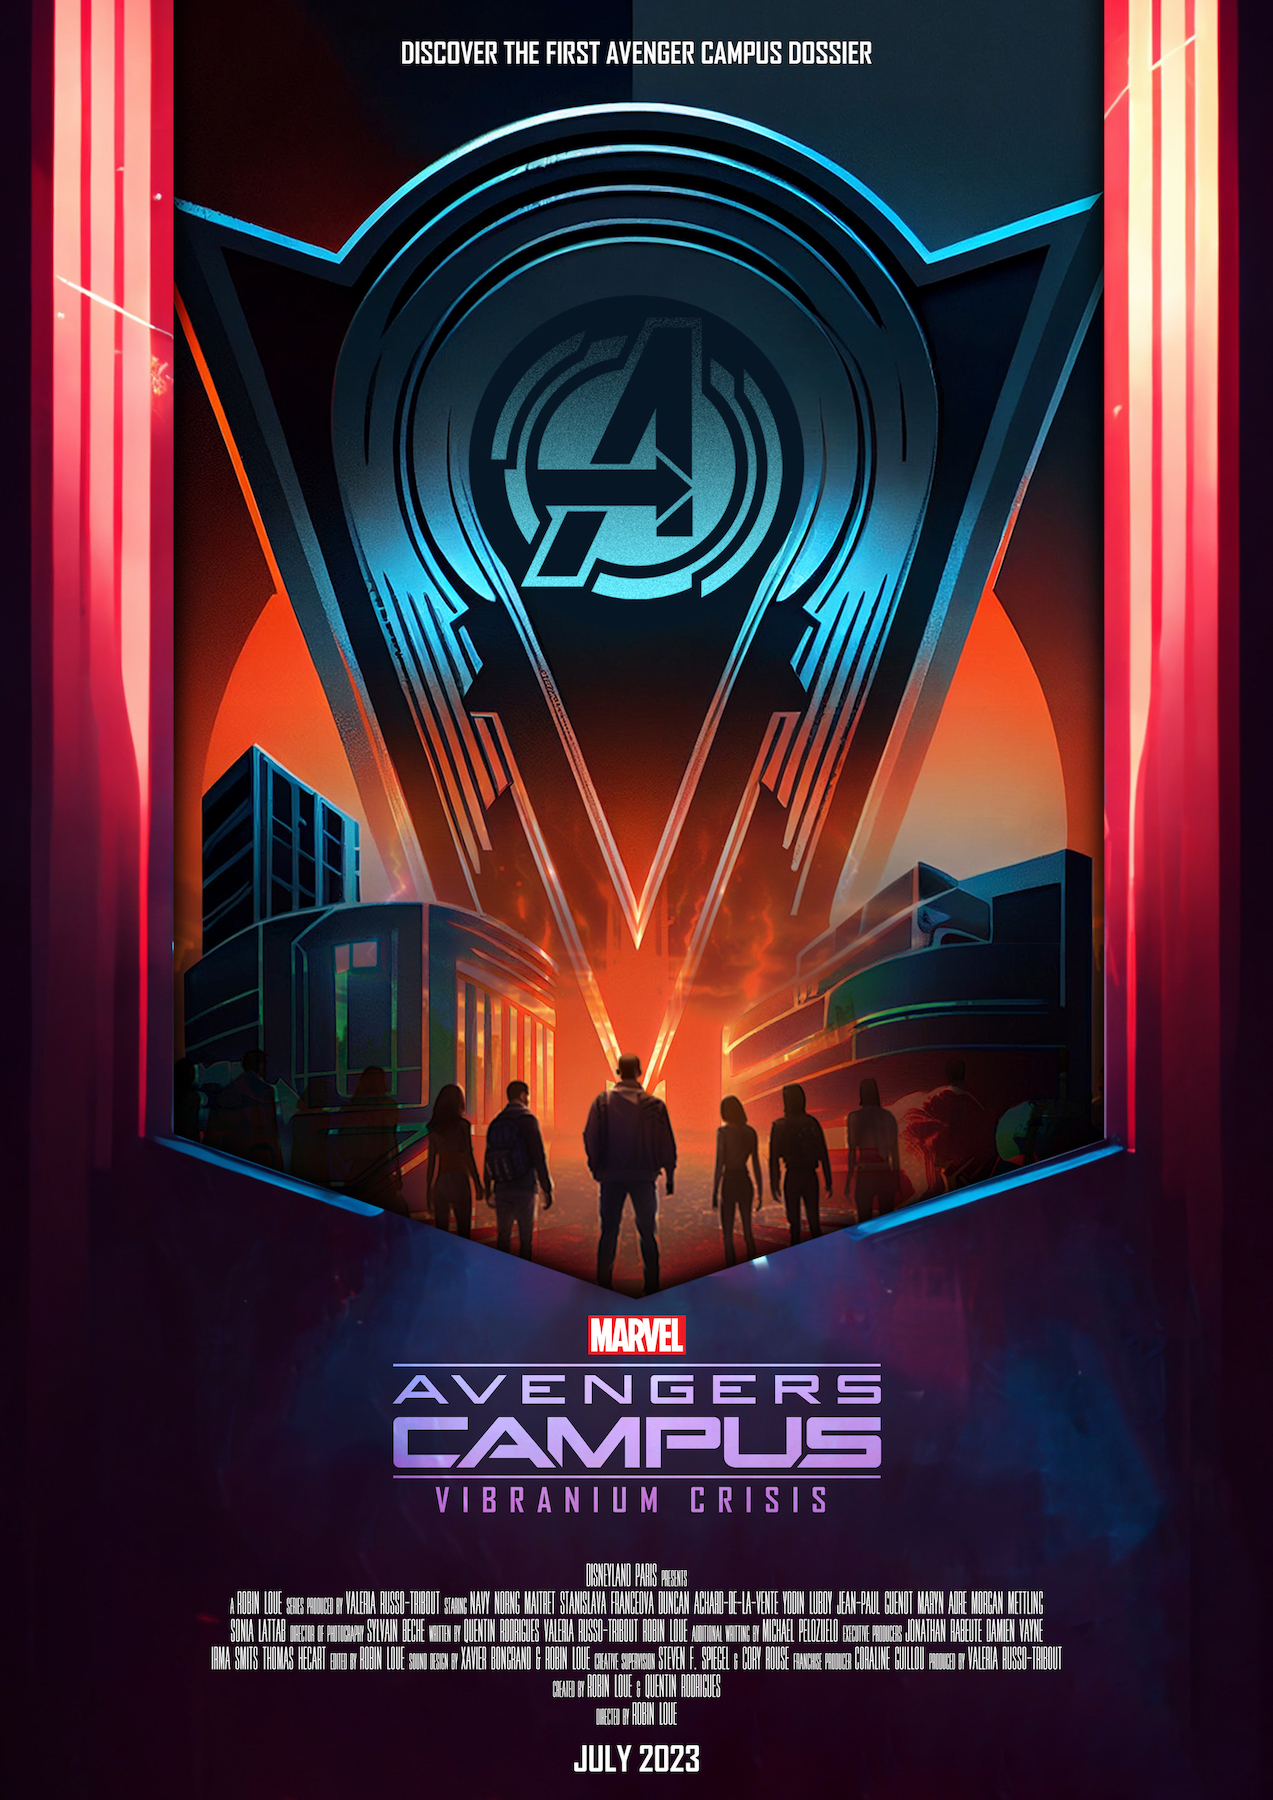 “Marvel Avengers Campus – Vibranium Crisis” 